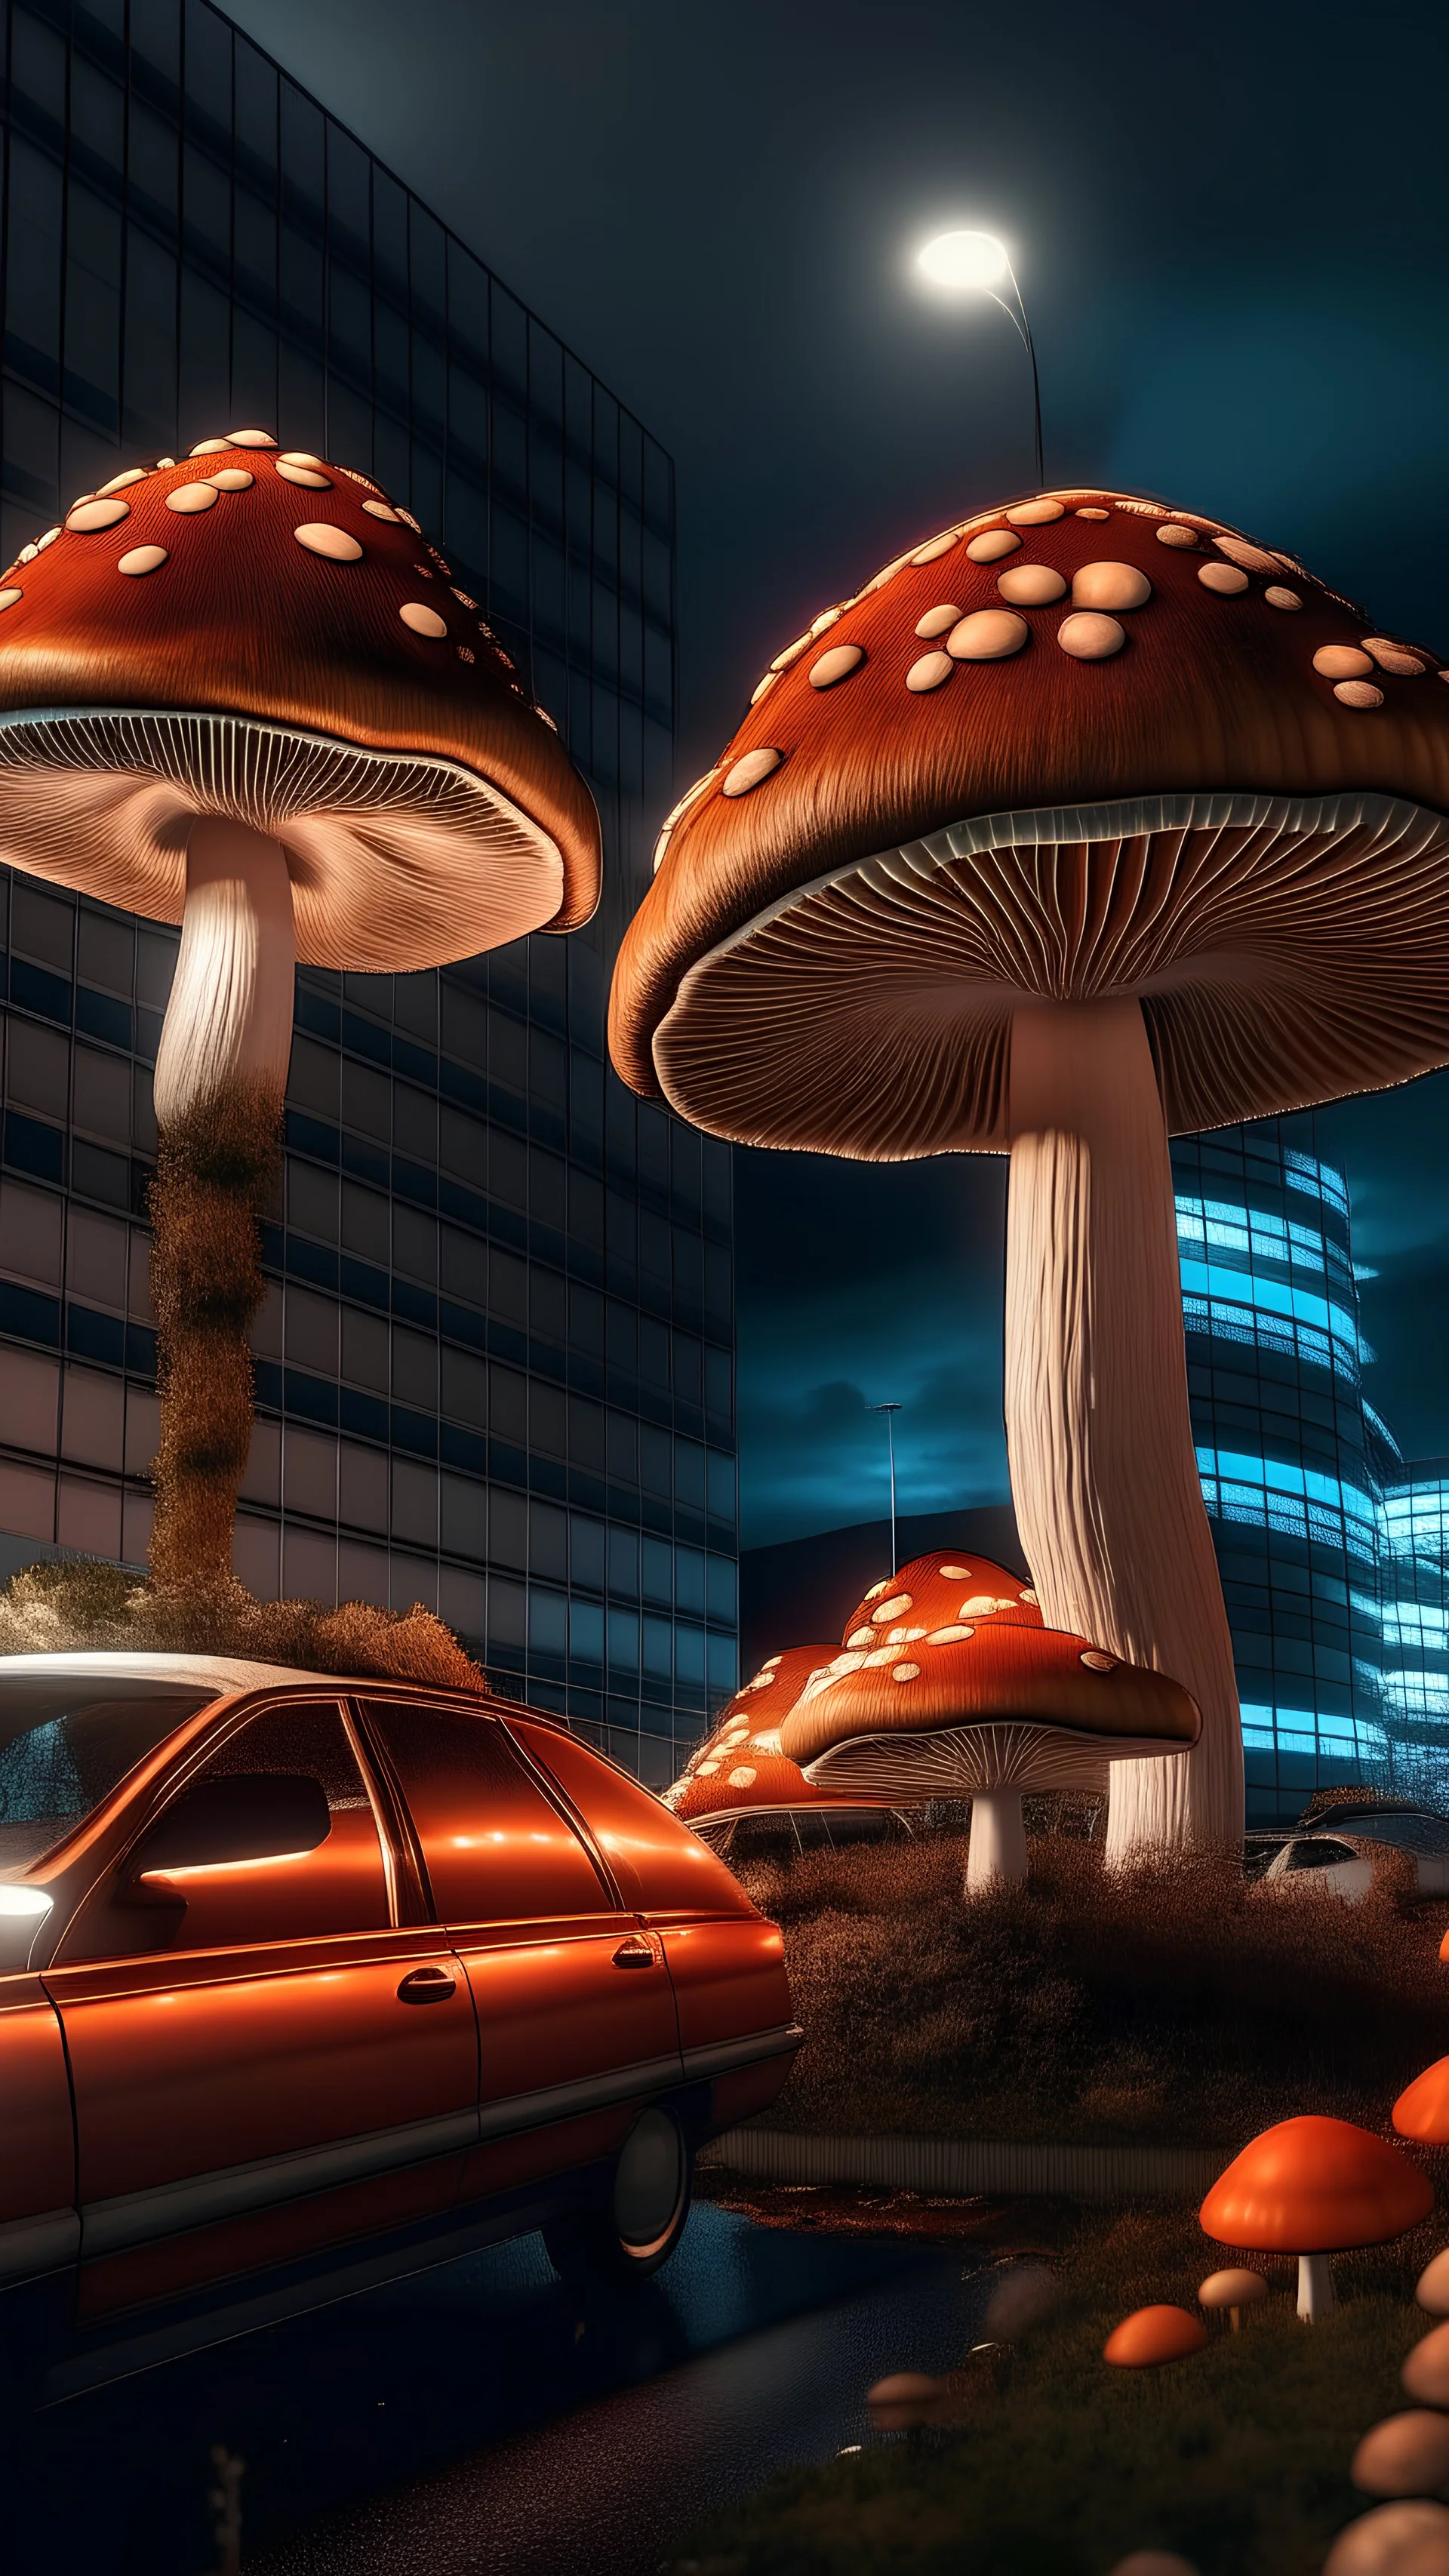 foto hiperrealista de hongos luminosos y brillantes que crecen sobre los autos y edificios. Bajo un cielo estrellado